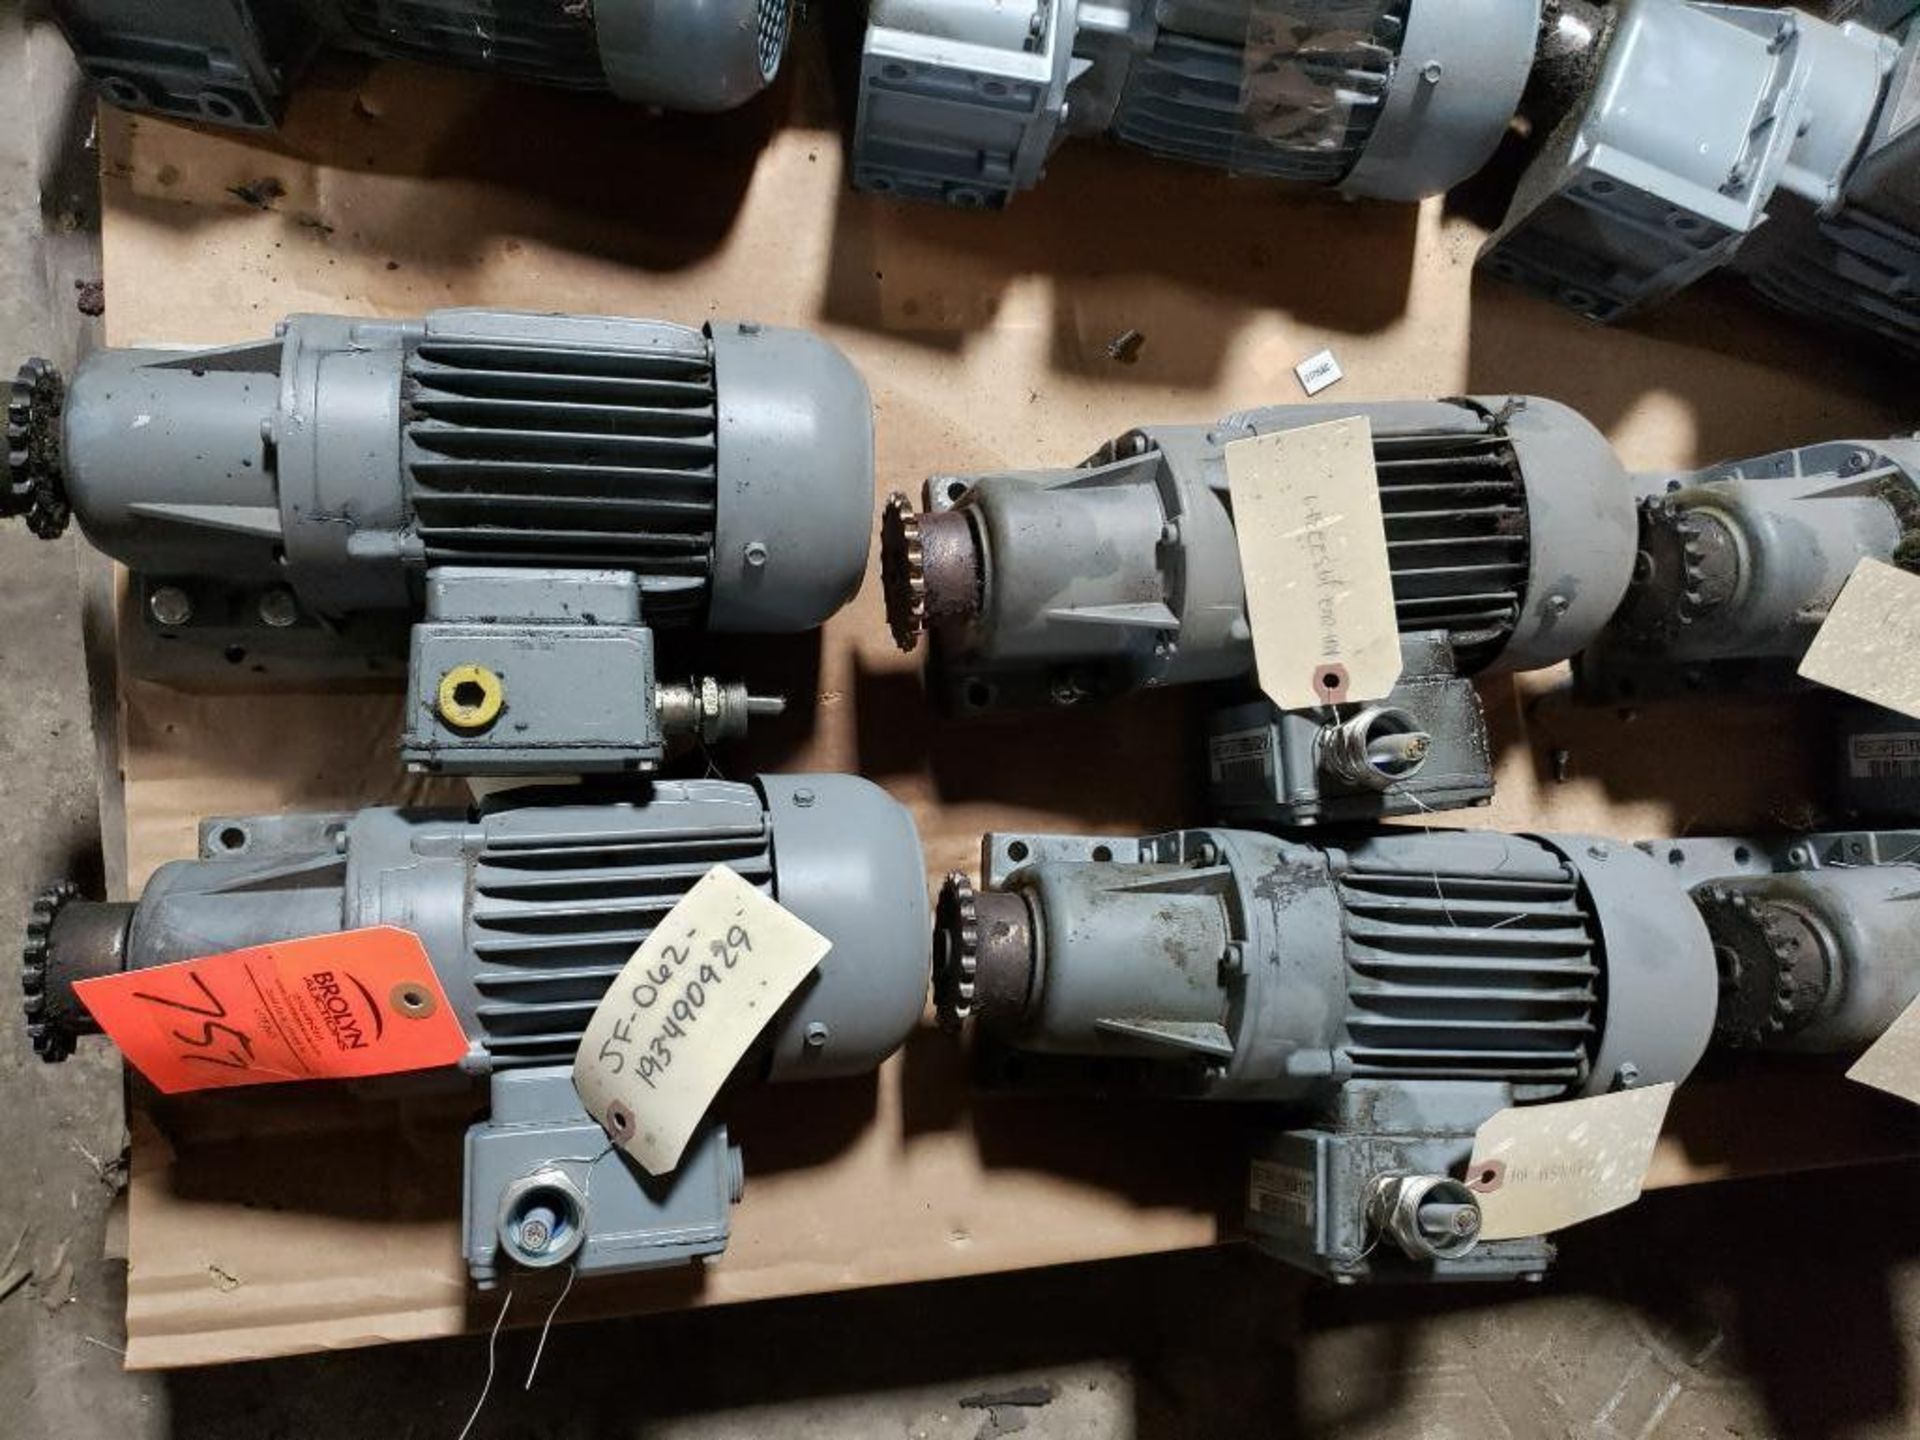 Qty 4 - Bauer gearmotors. Type BG06-11/D06LA4/AMUL.